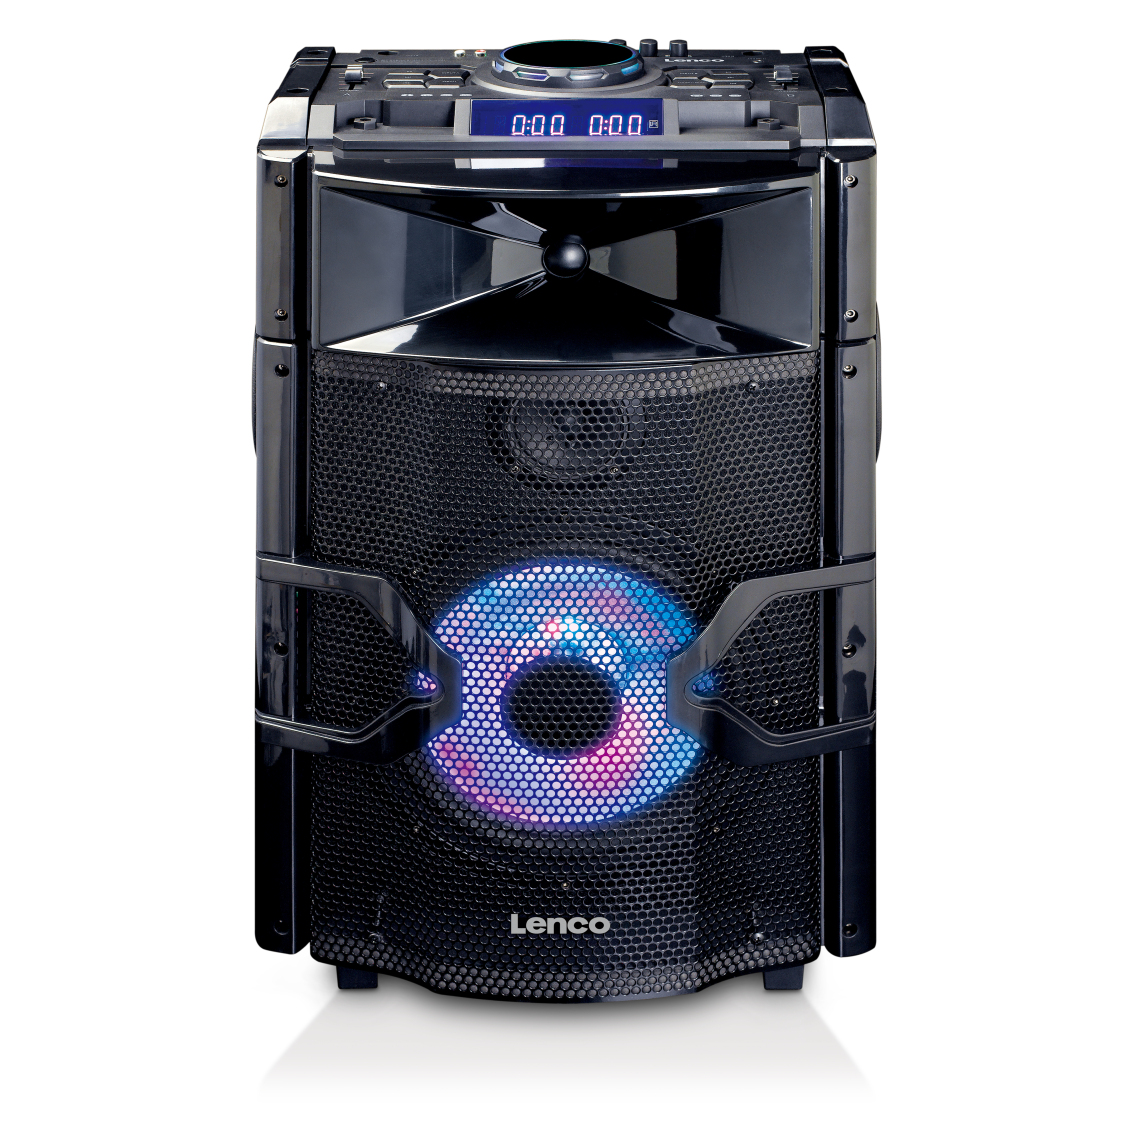 Lenco - Enceinte/table de mixage DJ haute puissance avec Bluetooth, USB, radio FM et éclairages PMX-250 Noir - Enceintes Hifi